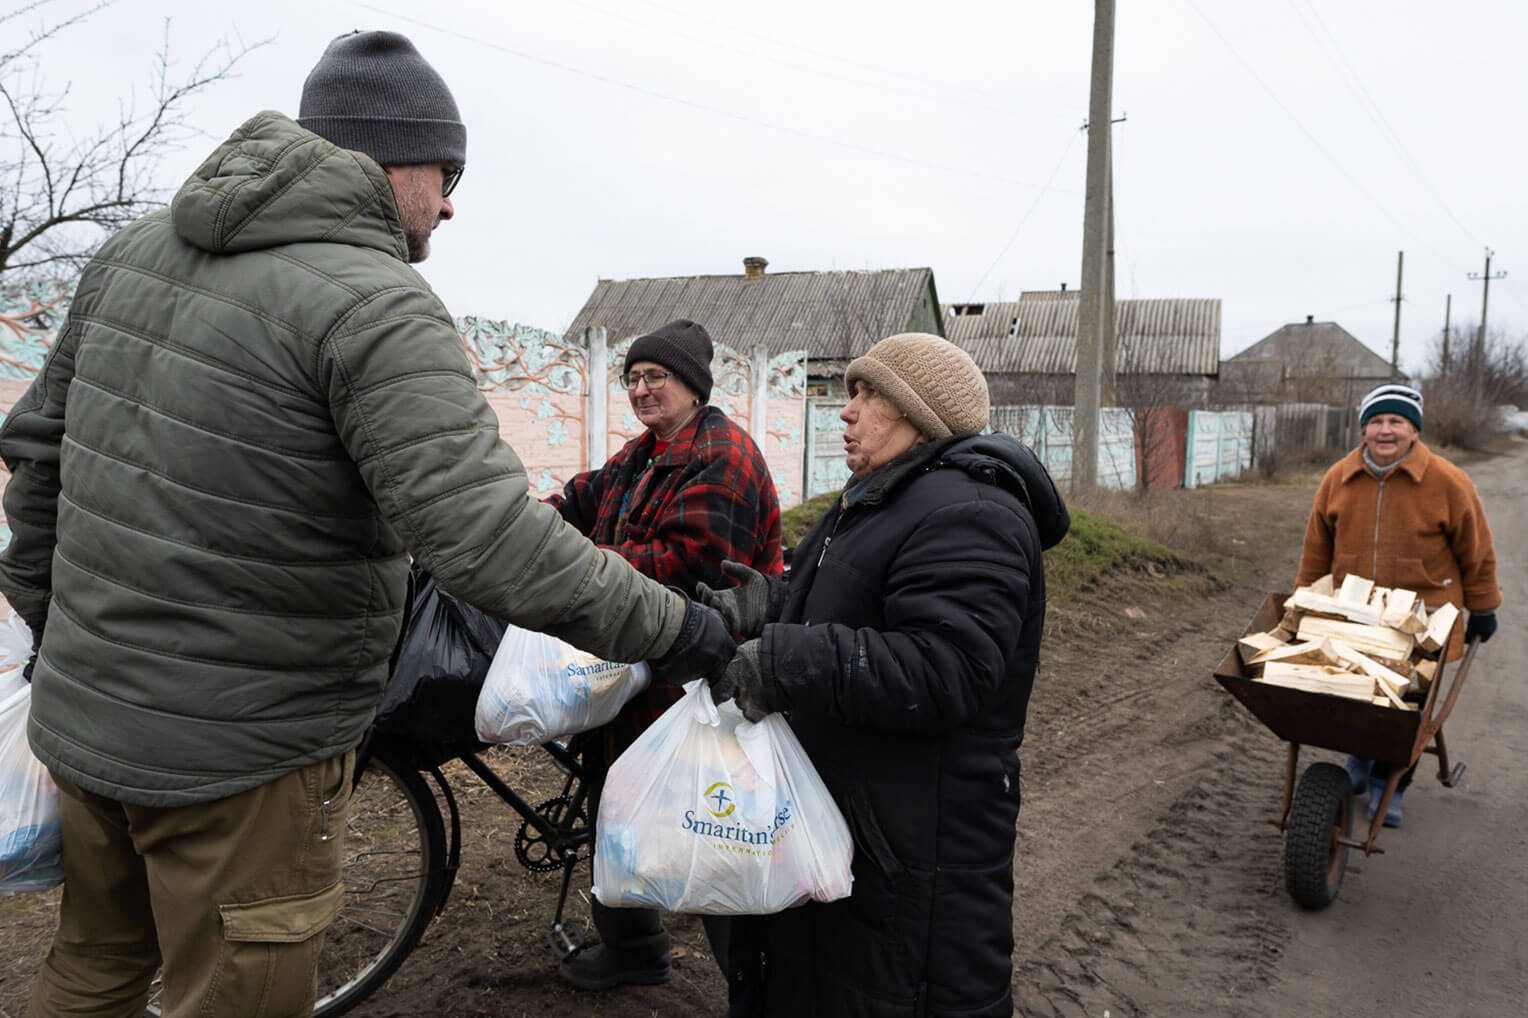 Samaritan’s Purse provee de comida a los que tienen necesidad en el este de Ucrania.